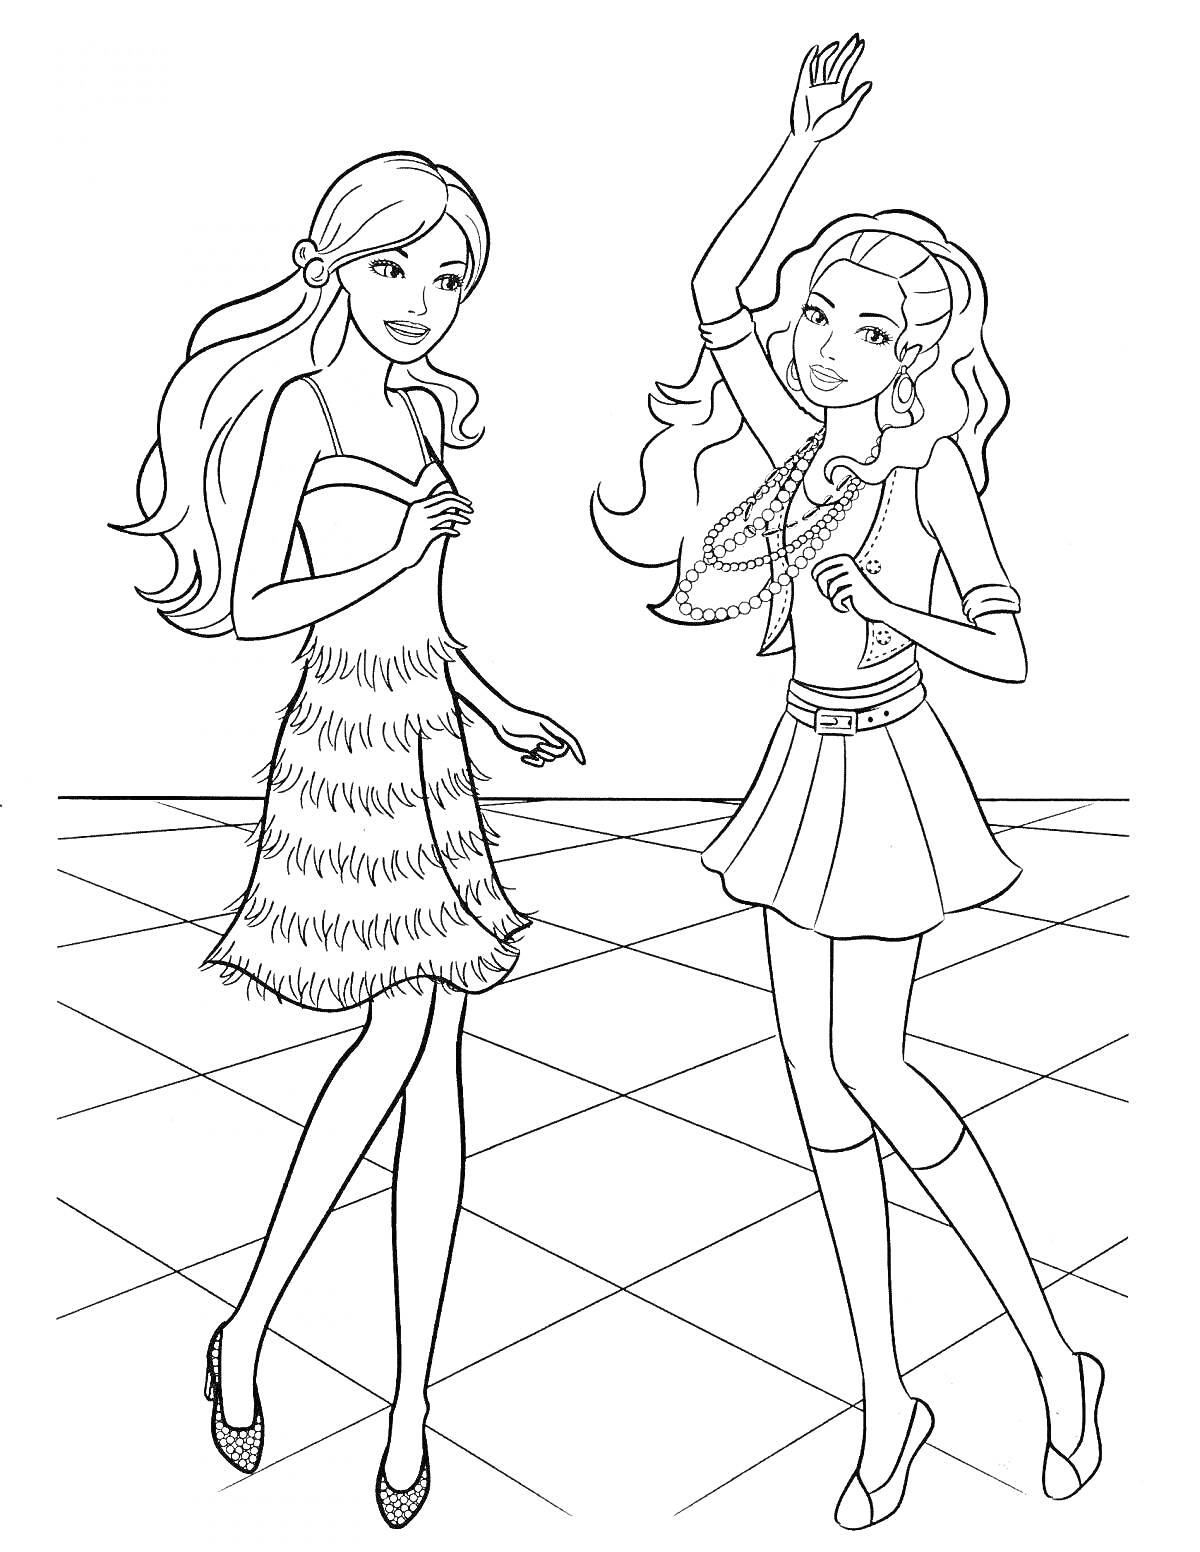 Раскраска Две девушки Барби на танцполе, в платье с перьями и юбке с ожерельями